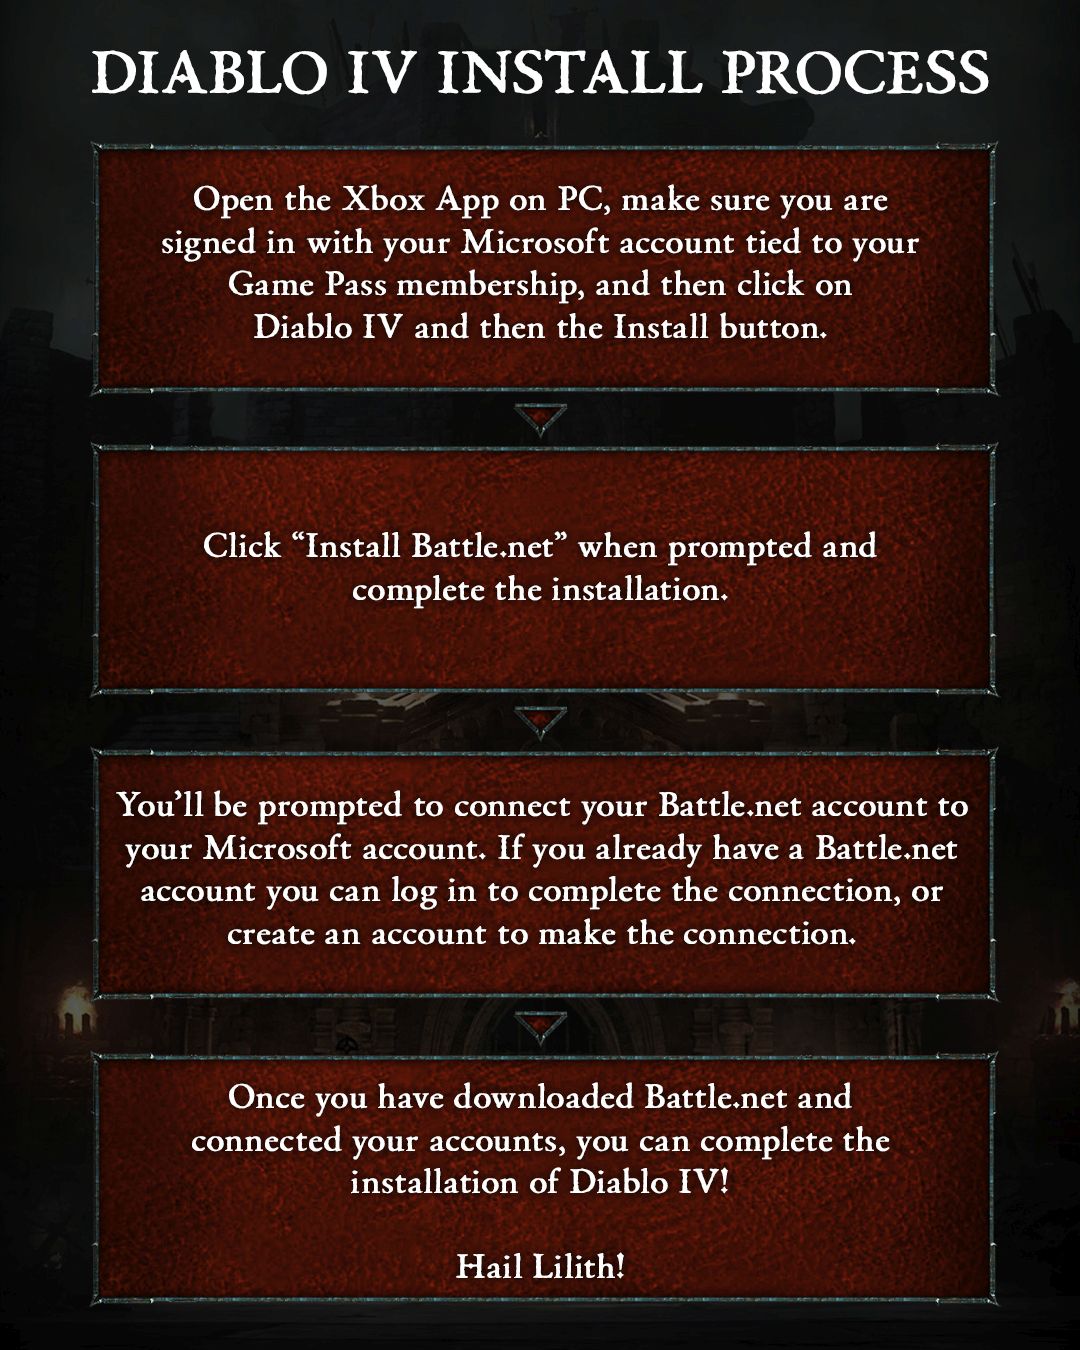 Xbox a partagé un guide détaillé étape par étape pour les joueurs pour les aider à installer Diablo 4 via Game Pass.